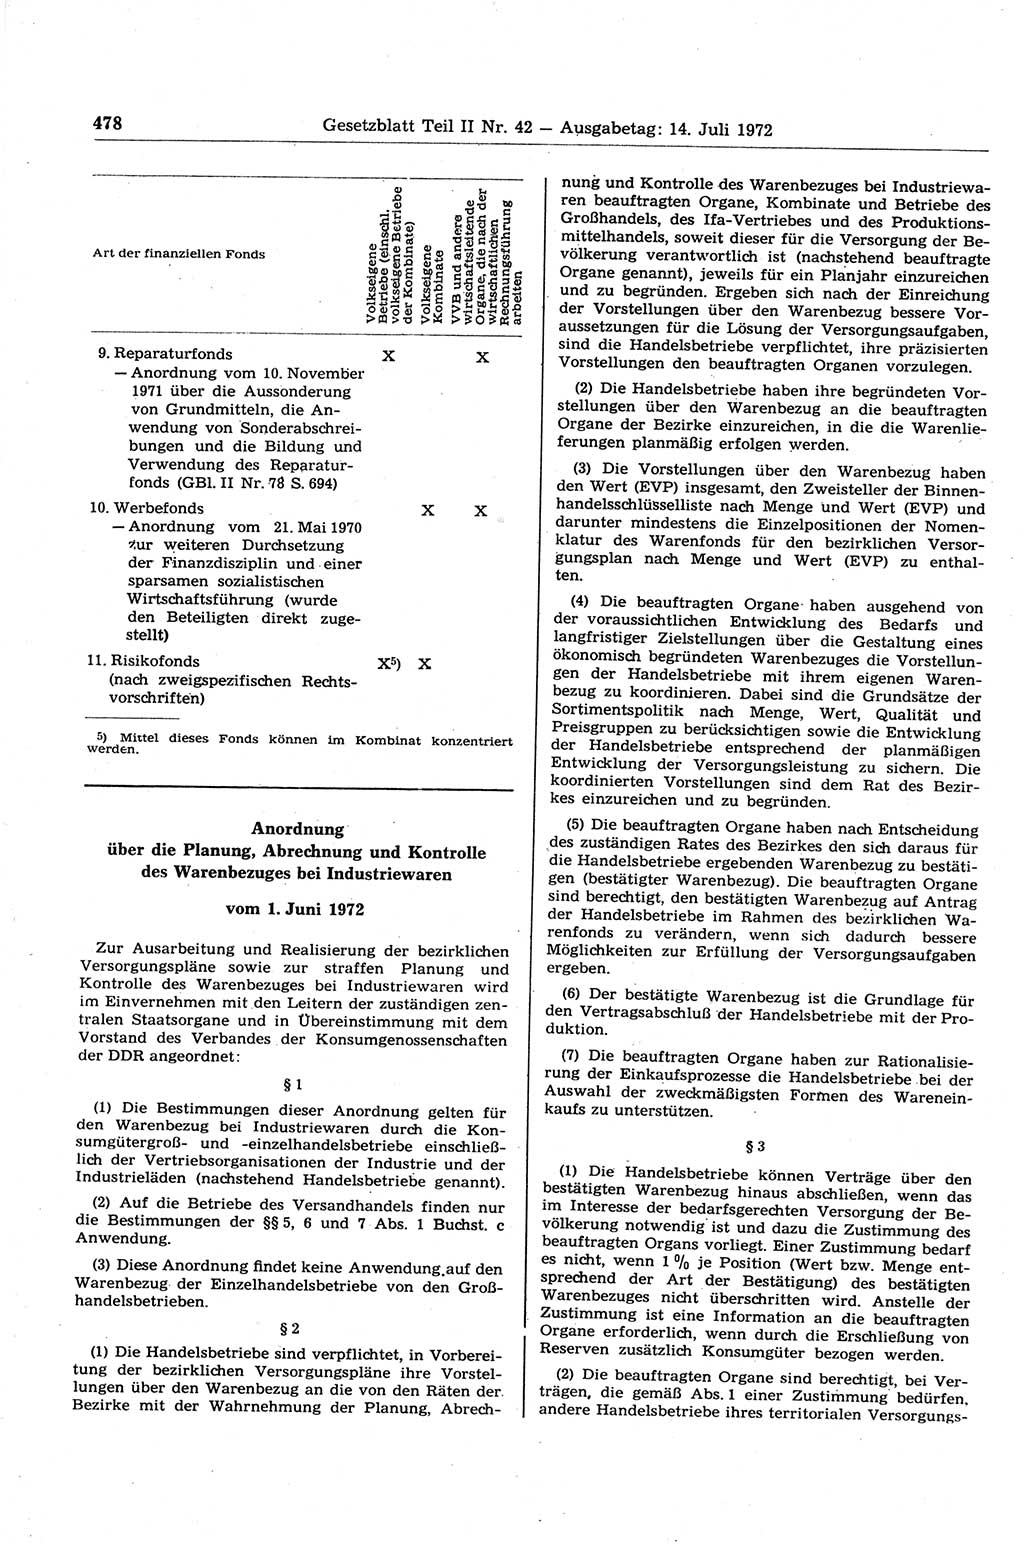 Gesetzblatt (GBl.) der Deutschen Demokratischen Republik (DDR) Teil ⅠⅠ 1972, Seite 478 (GBl. DDR ⅠⅠ 1972, S. 478)